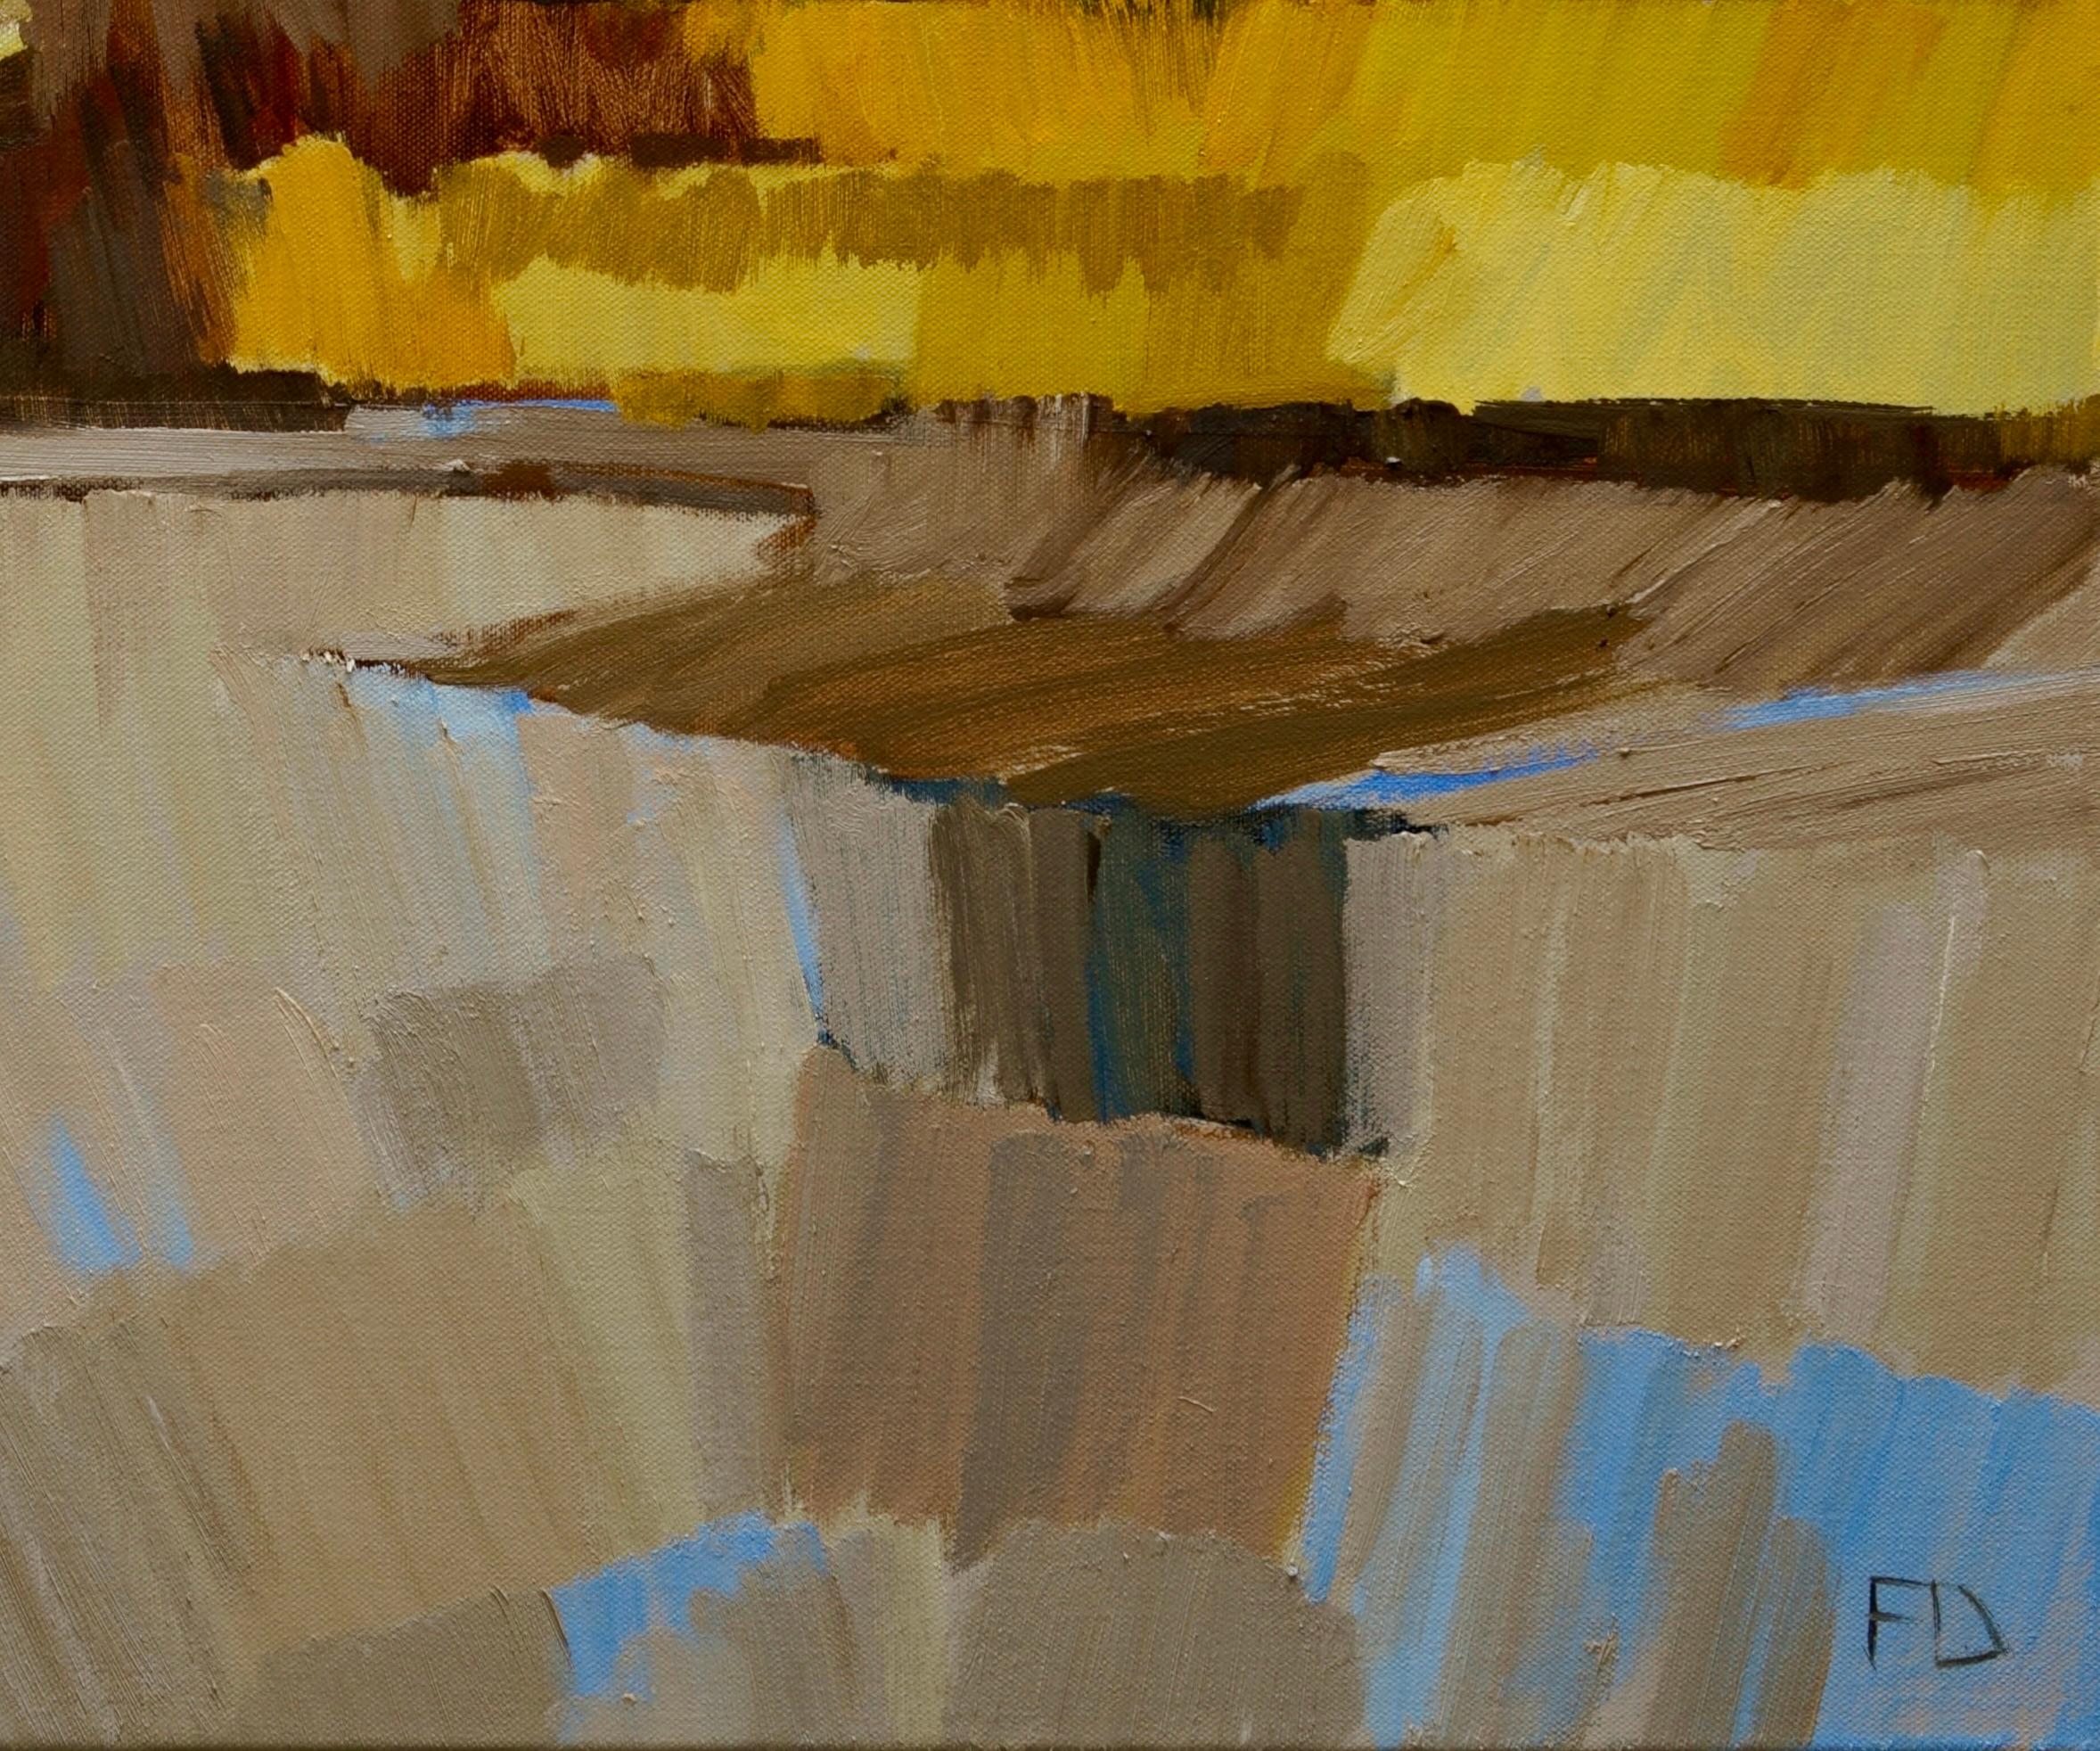 The Hurdle - Peinture impressionniste contemporaine du 21e siècle représentant un paysage  - Painting de Frank Dekkers